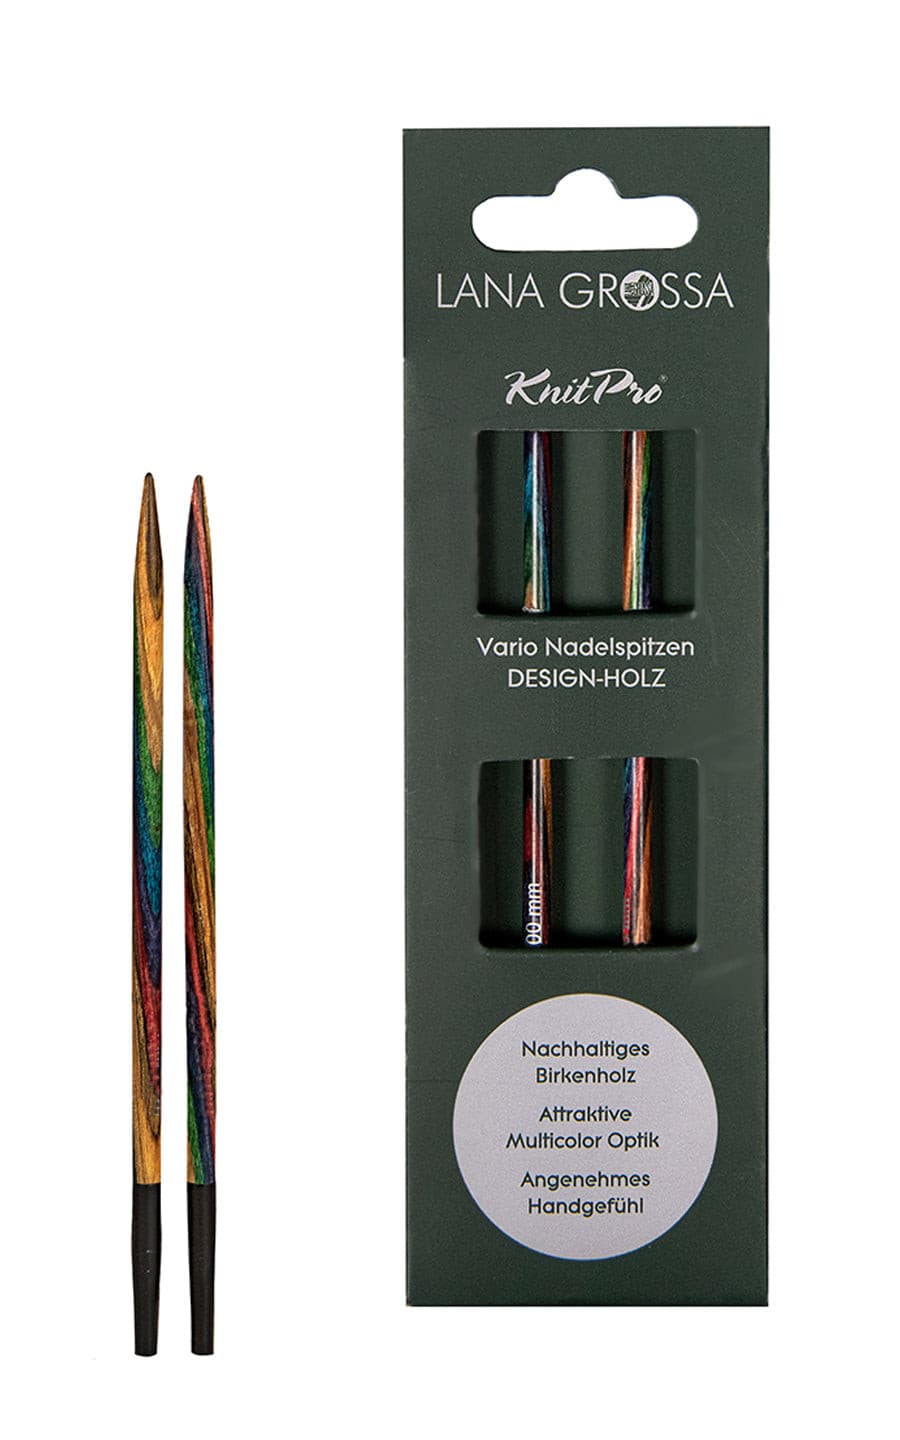 4,5 mm Nadelspitze Vario aus Holz - neue Verpackung von LANA GROSSA jetzt online kaufen bei OONIQUE